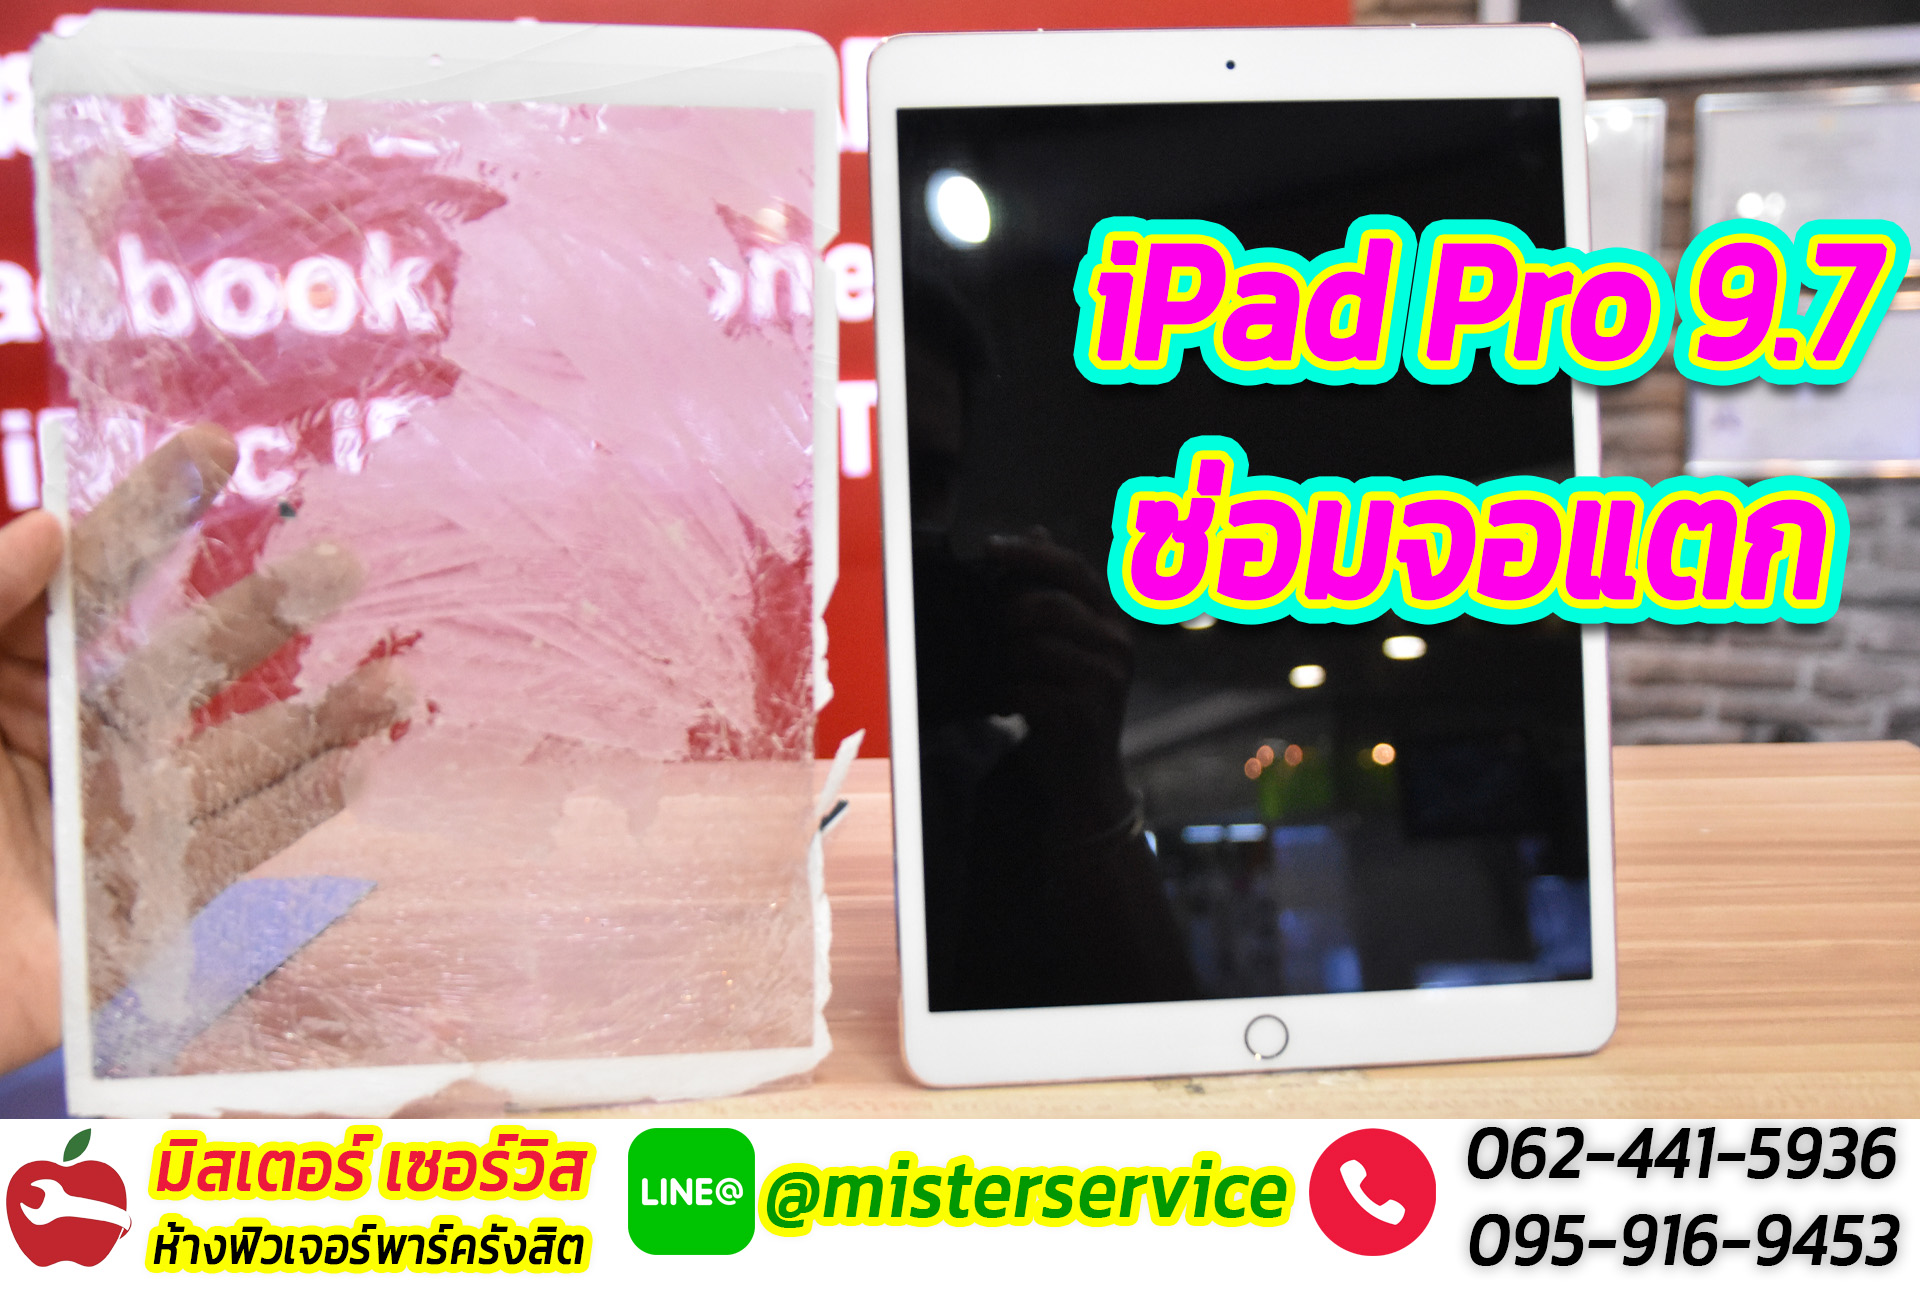 ไอแพดโปร 9.7 iPad Pro 9.7 หน้าจอแตก ลอกหน้าจอ เปลี่ยนเฉพาะกระจกไอแพดที่แตก ตลาดสี่มุมเมือง เซียร์รังสิต